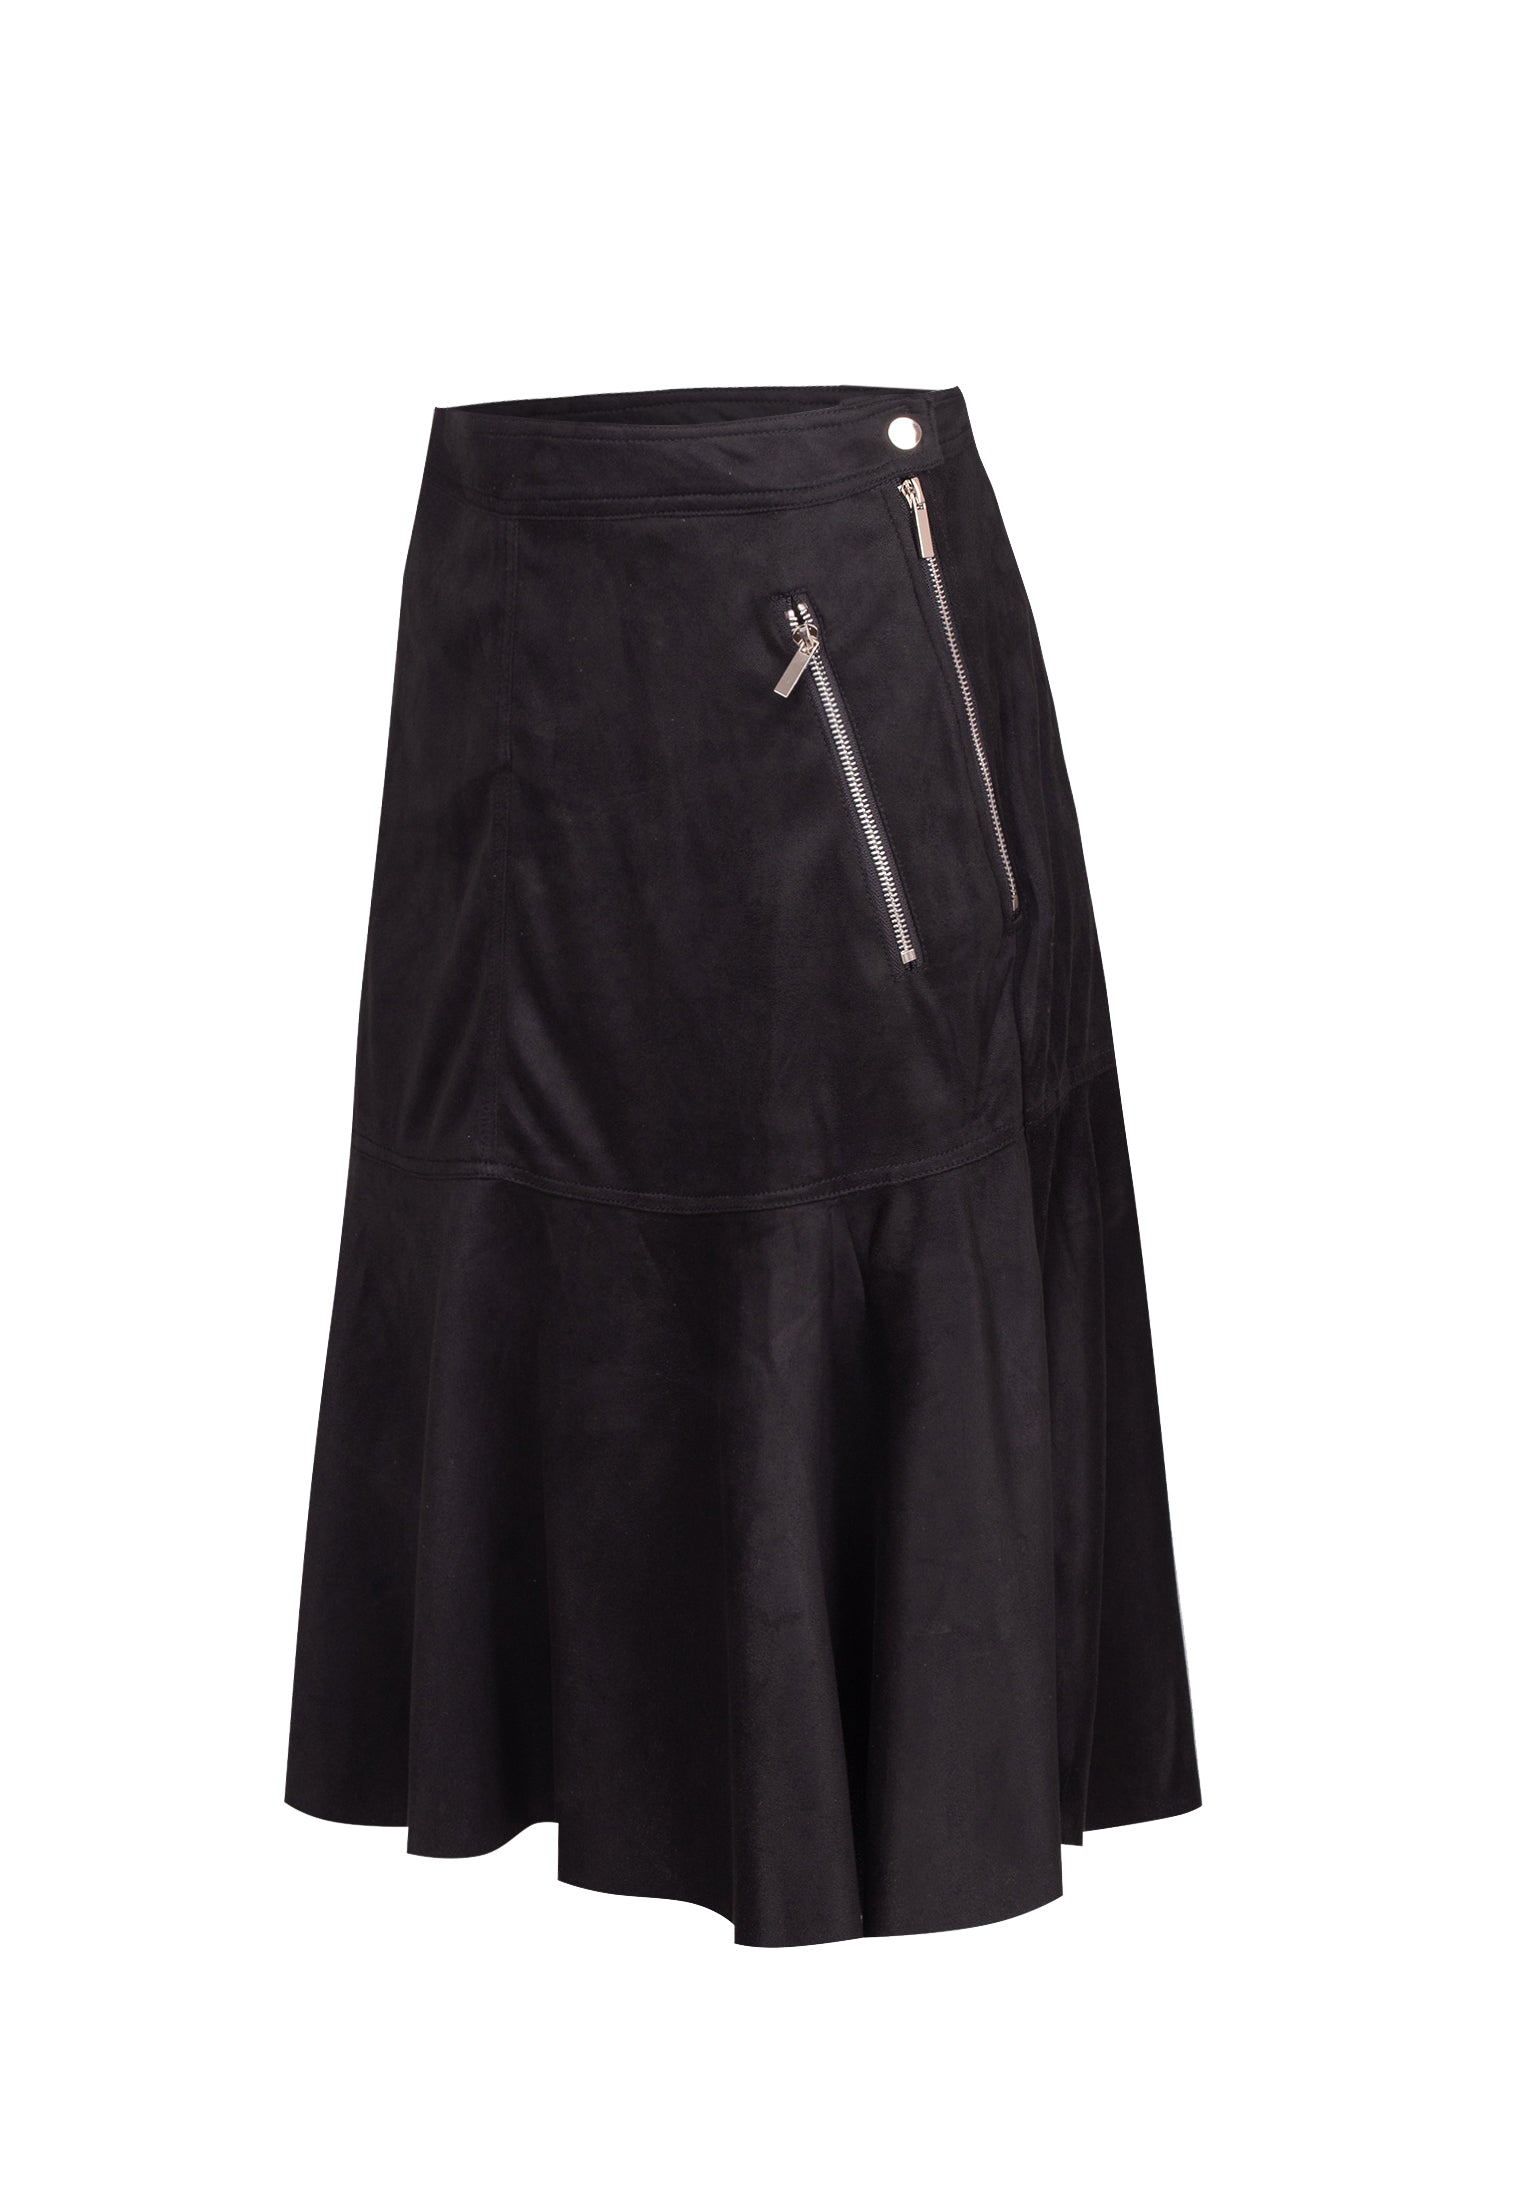 RELIGION Eon Faux Suede Black Midi Skirt